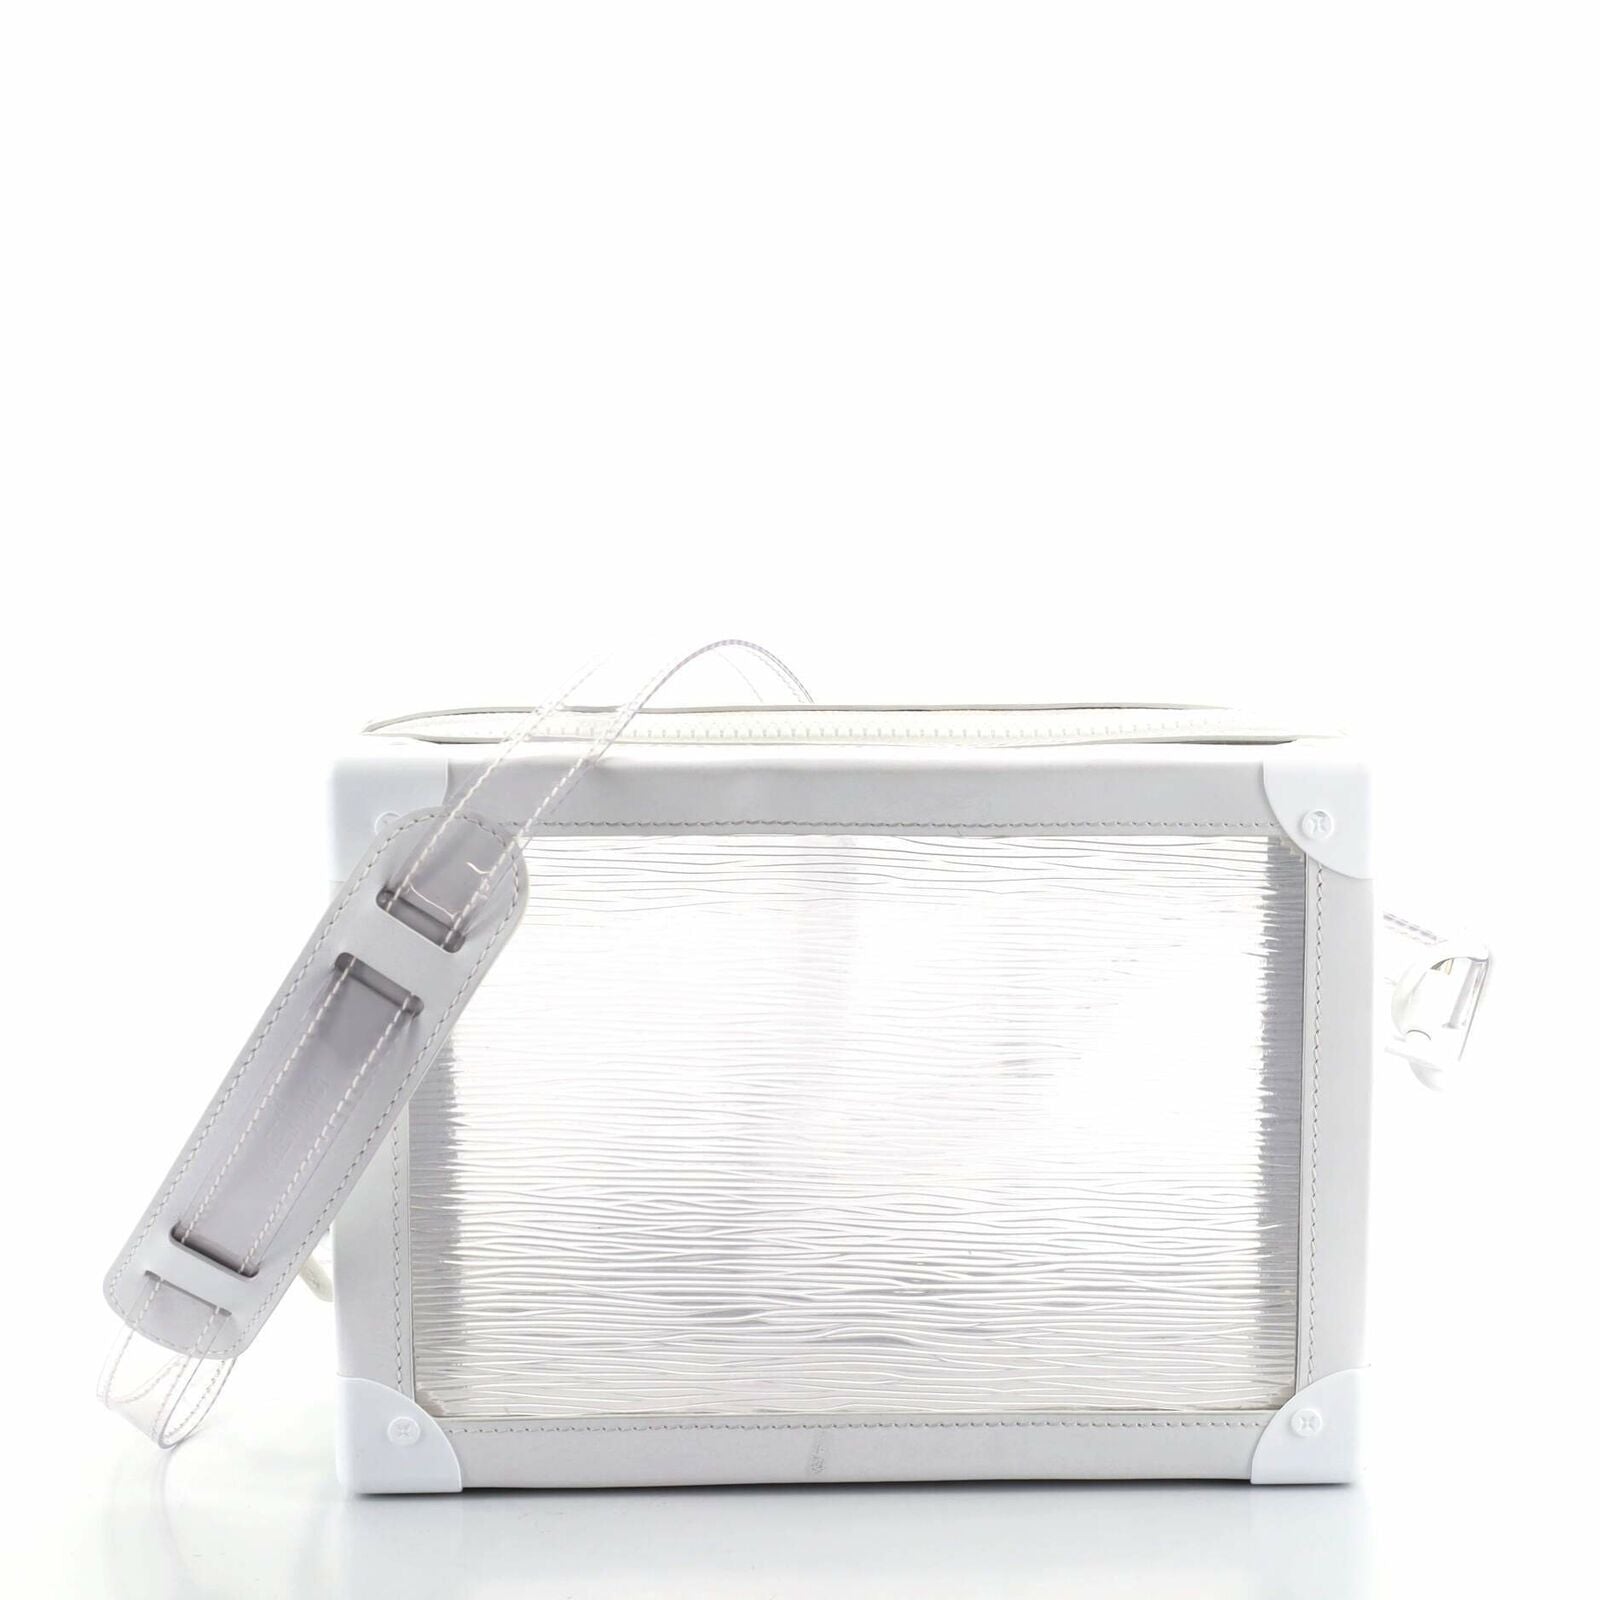 Louis Vuitton Soft Trunk Bag Limited Edition Epi Plage Leather transparent seethrough bag